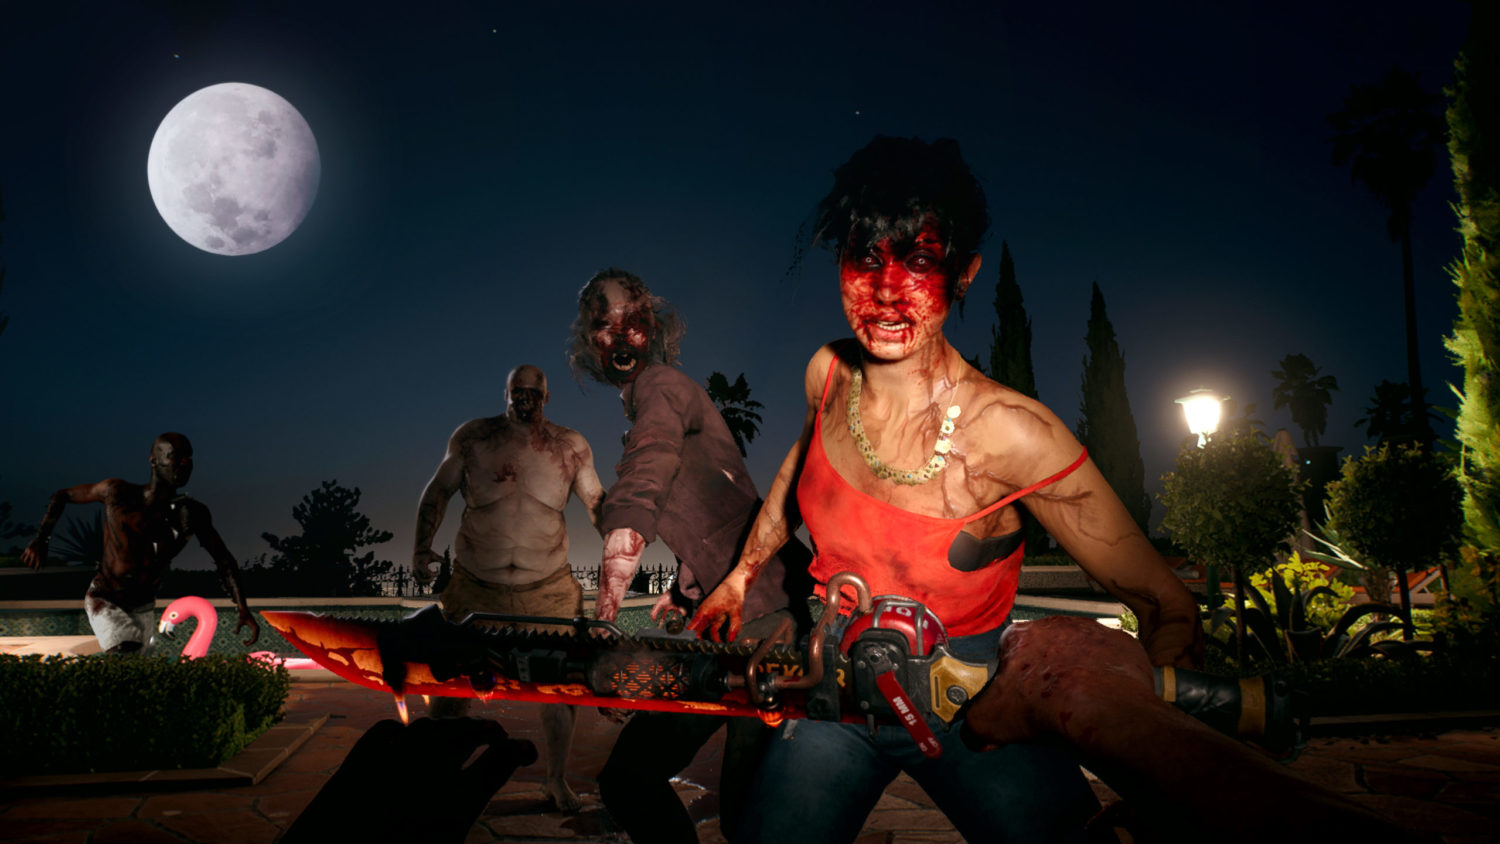 Dead Island 2 review - it's still 2011 in Los Angeles